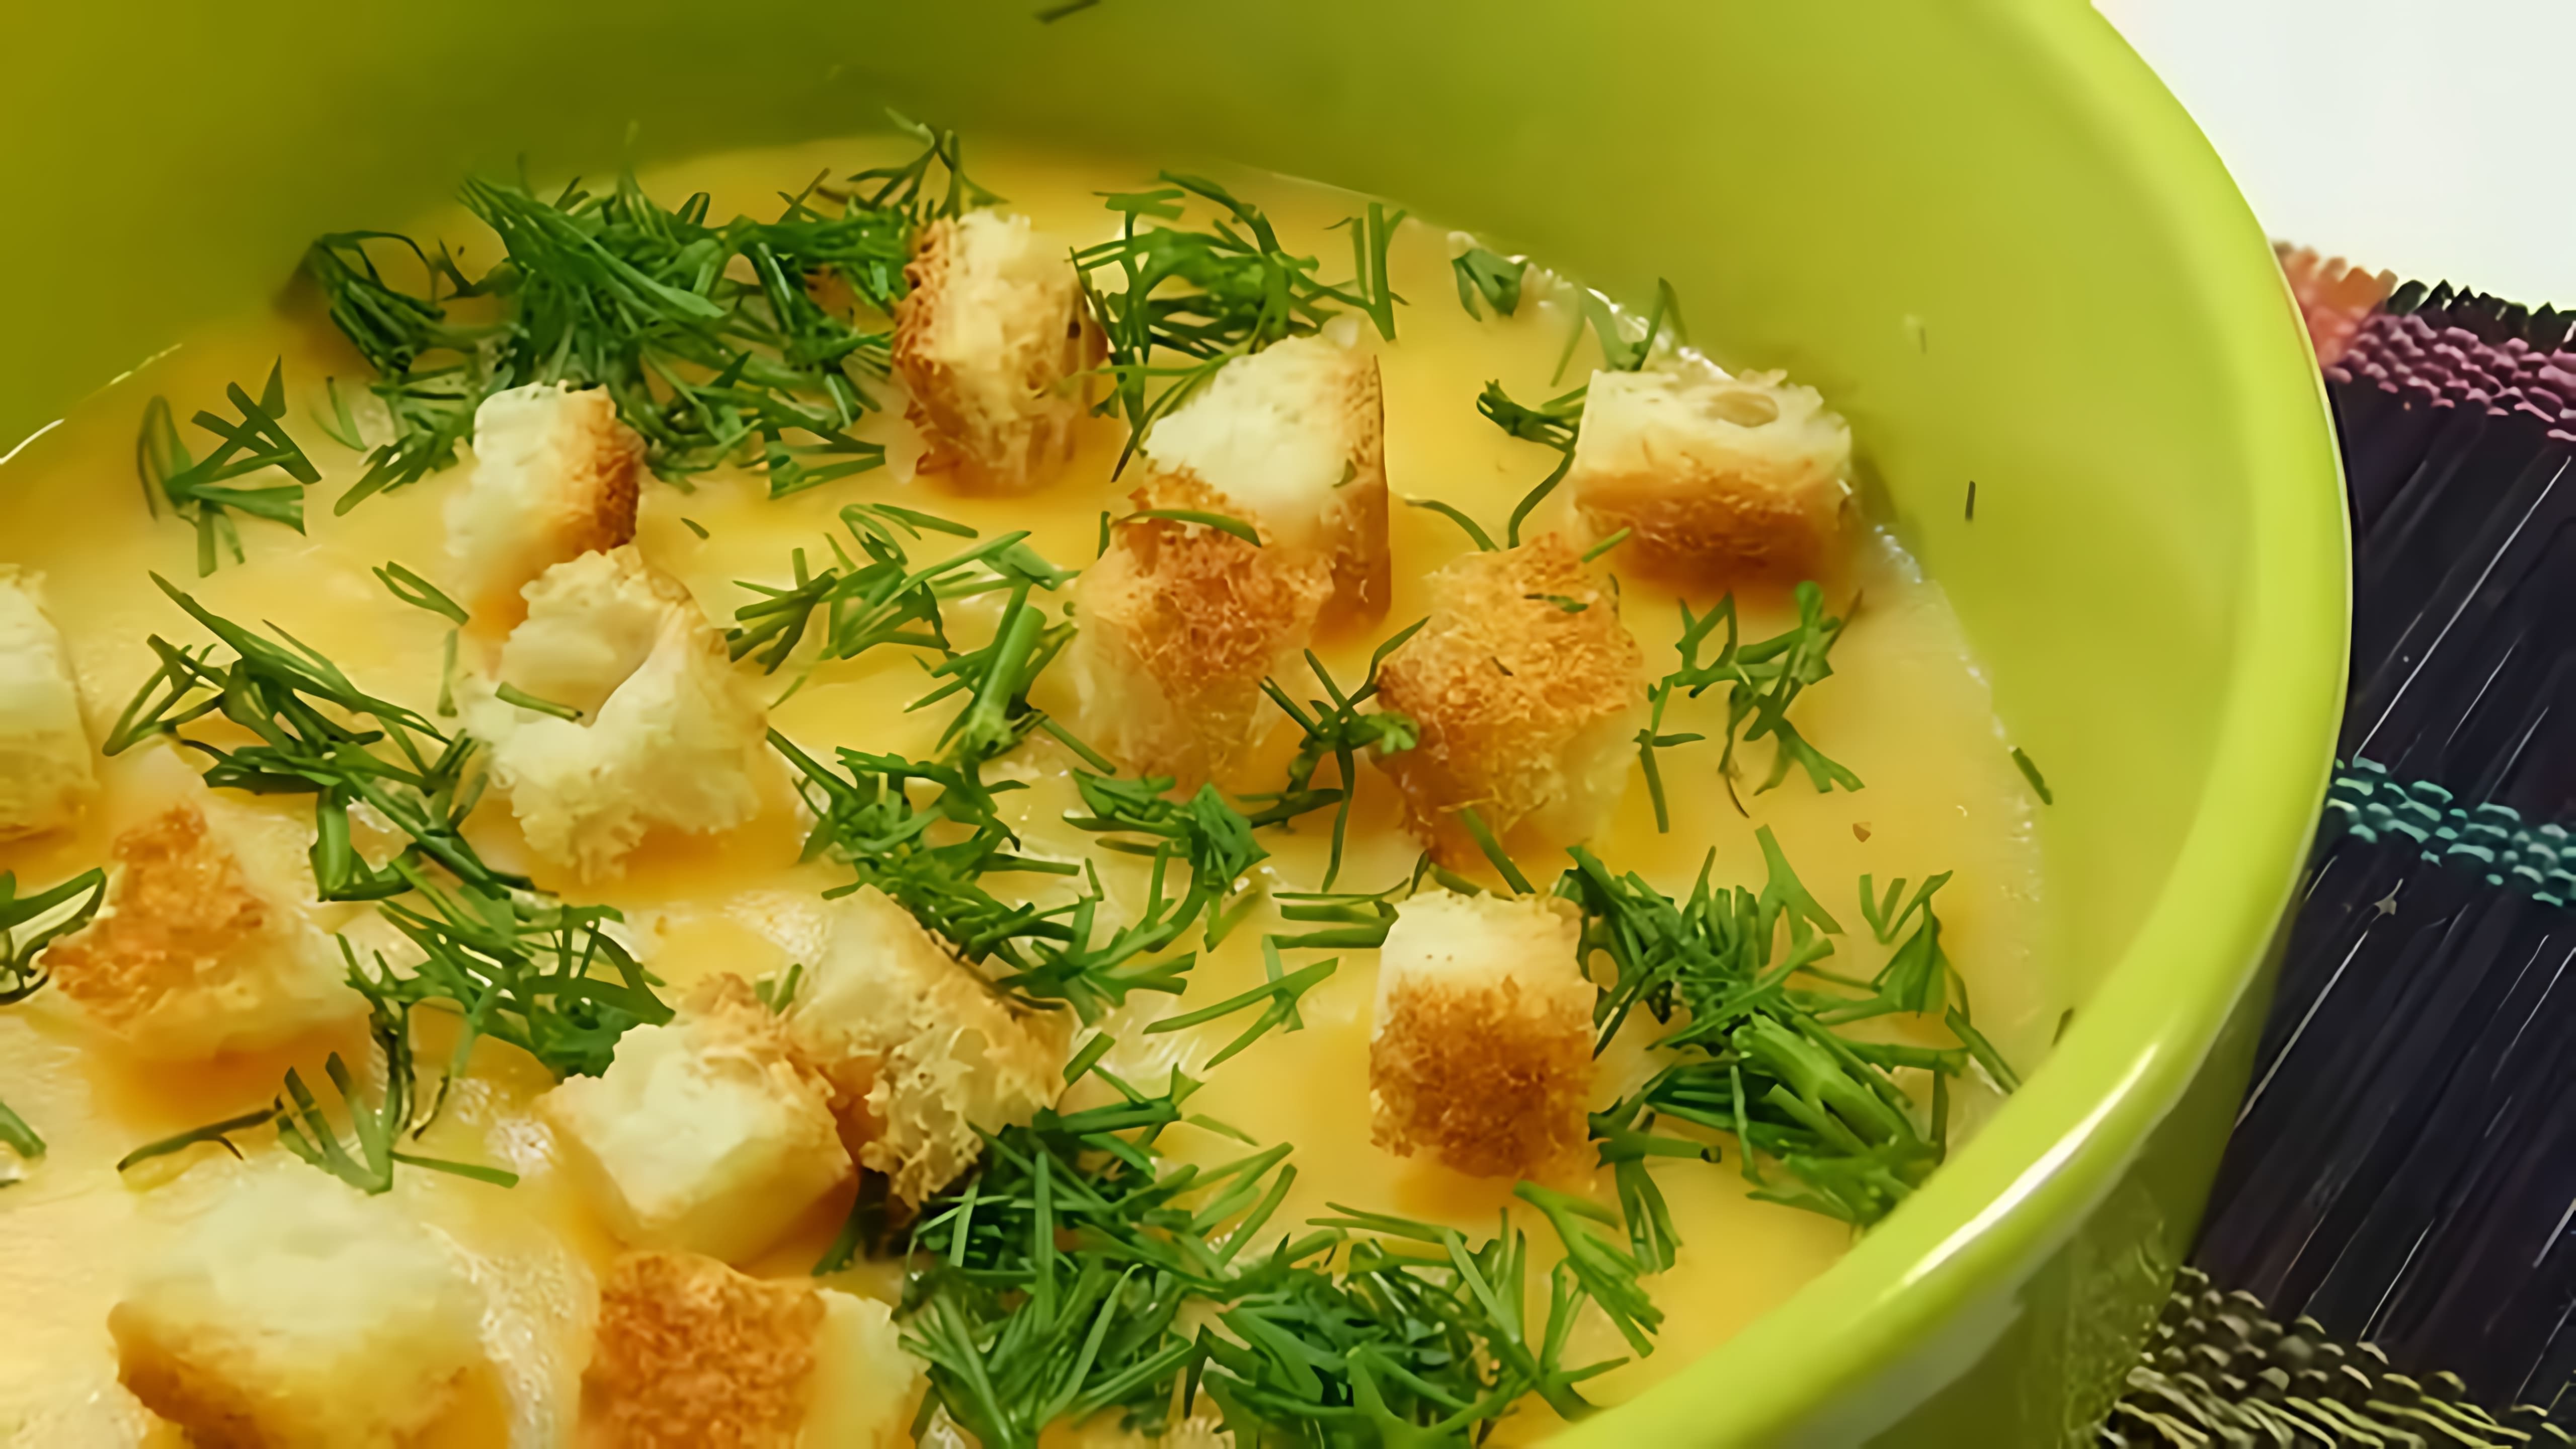 В этом видео демонстрируется рецепт приготовления овощного супа-пюре с сыром и сухариками